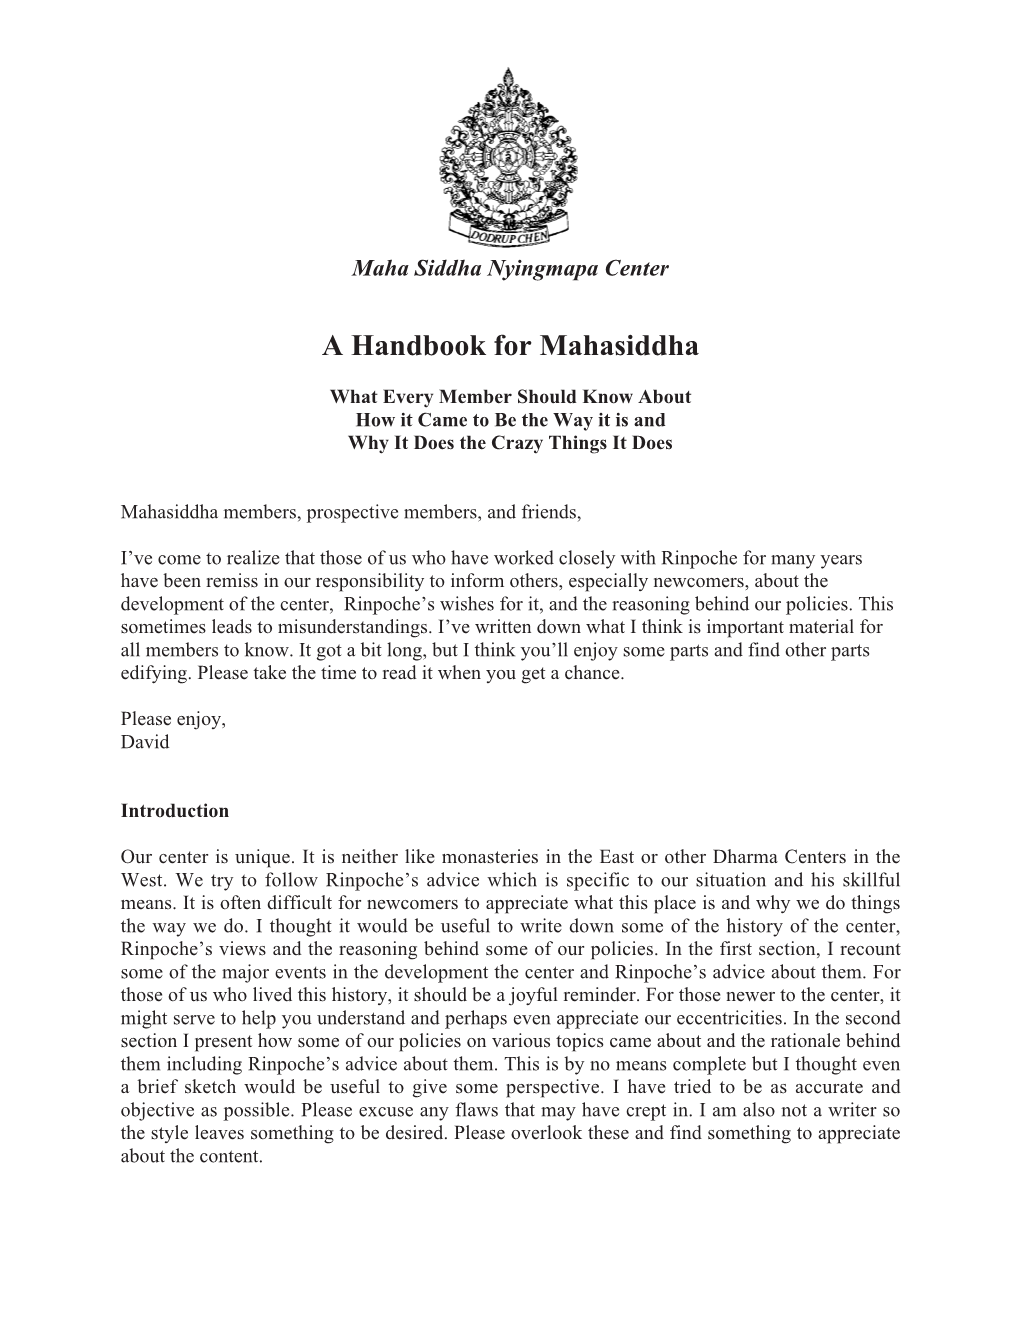 Mahasiddha Handbook